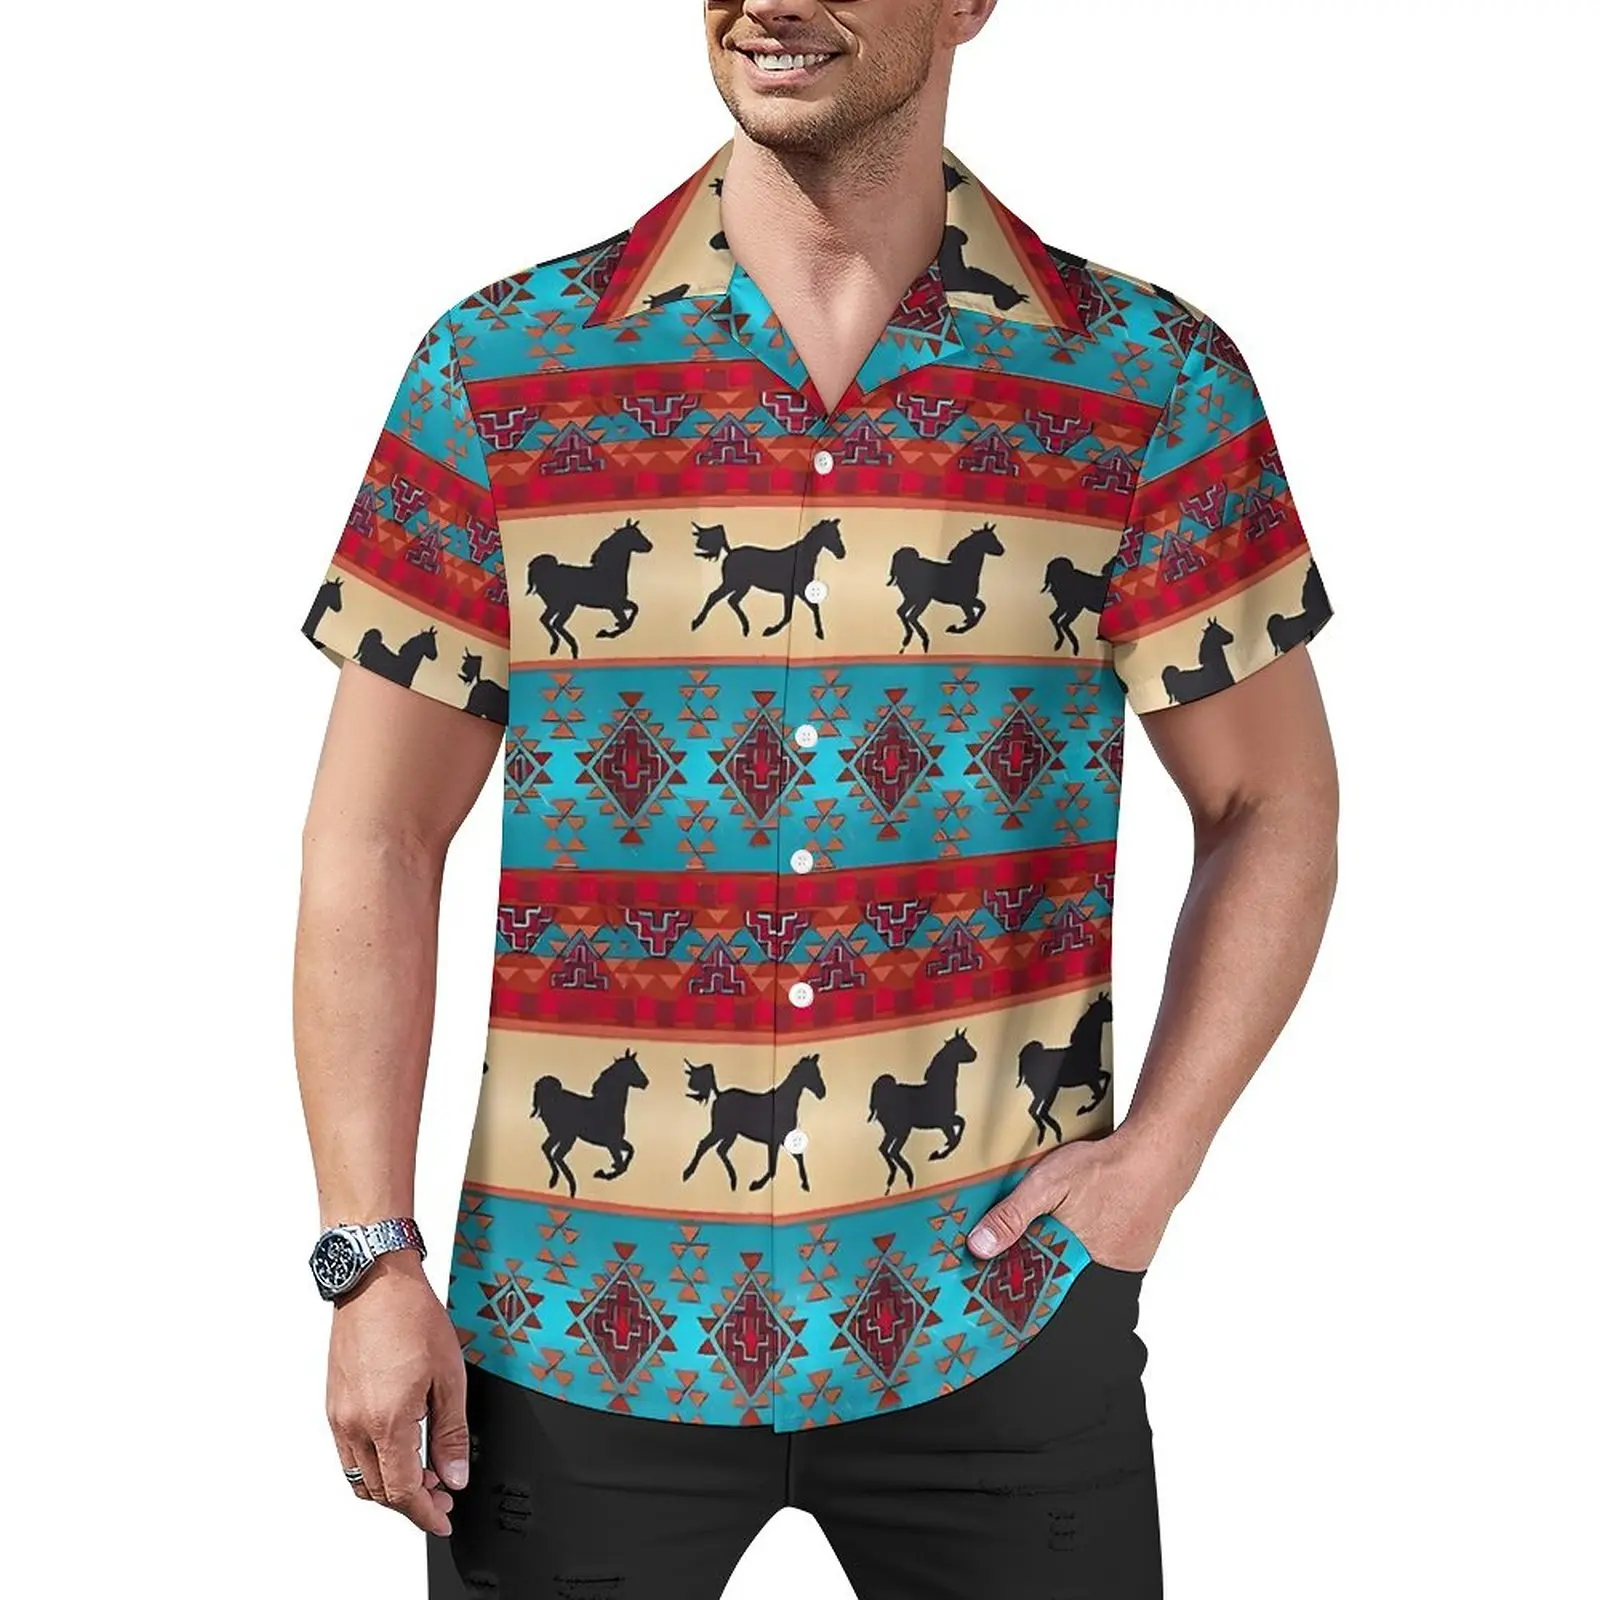 

Рубашка мужская свободного покроя с принтом лошадей, Пляжная винтажная Повседневная футболка с гавайским графическим принтом, с коротким рукавом, в уличном стиле